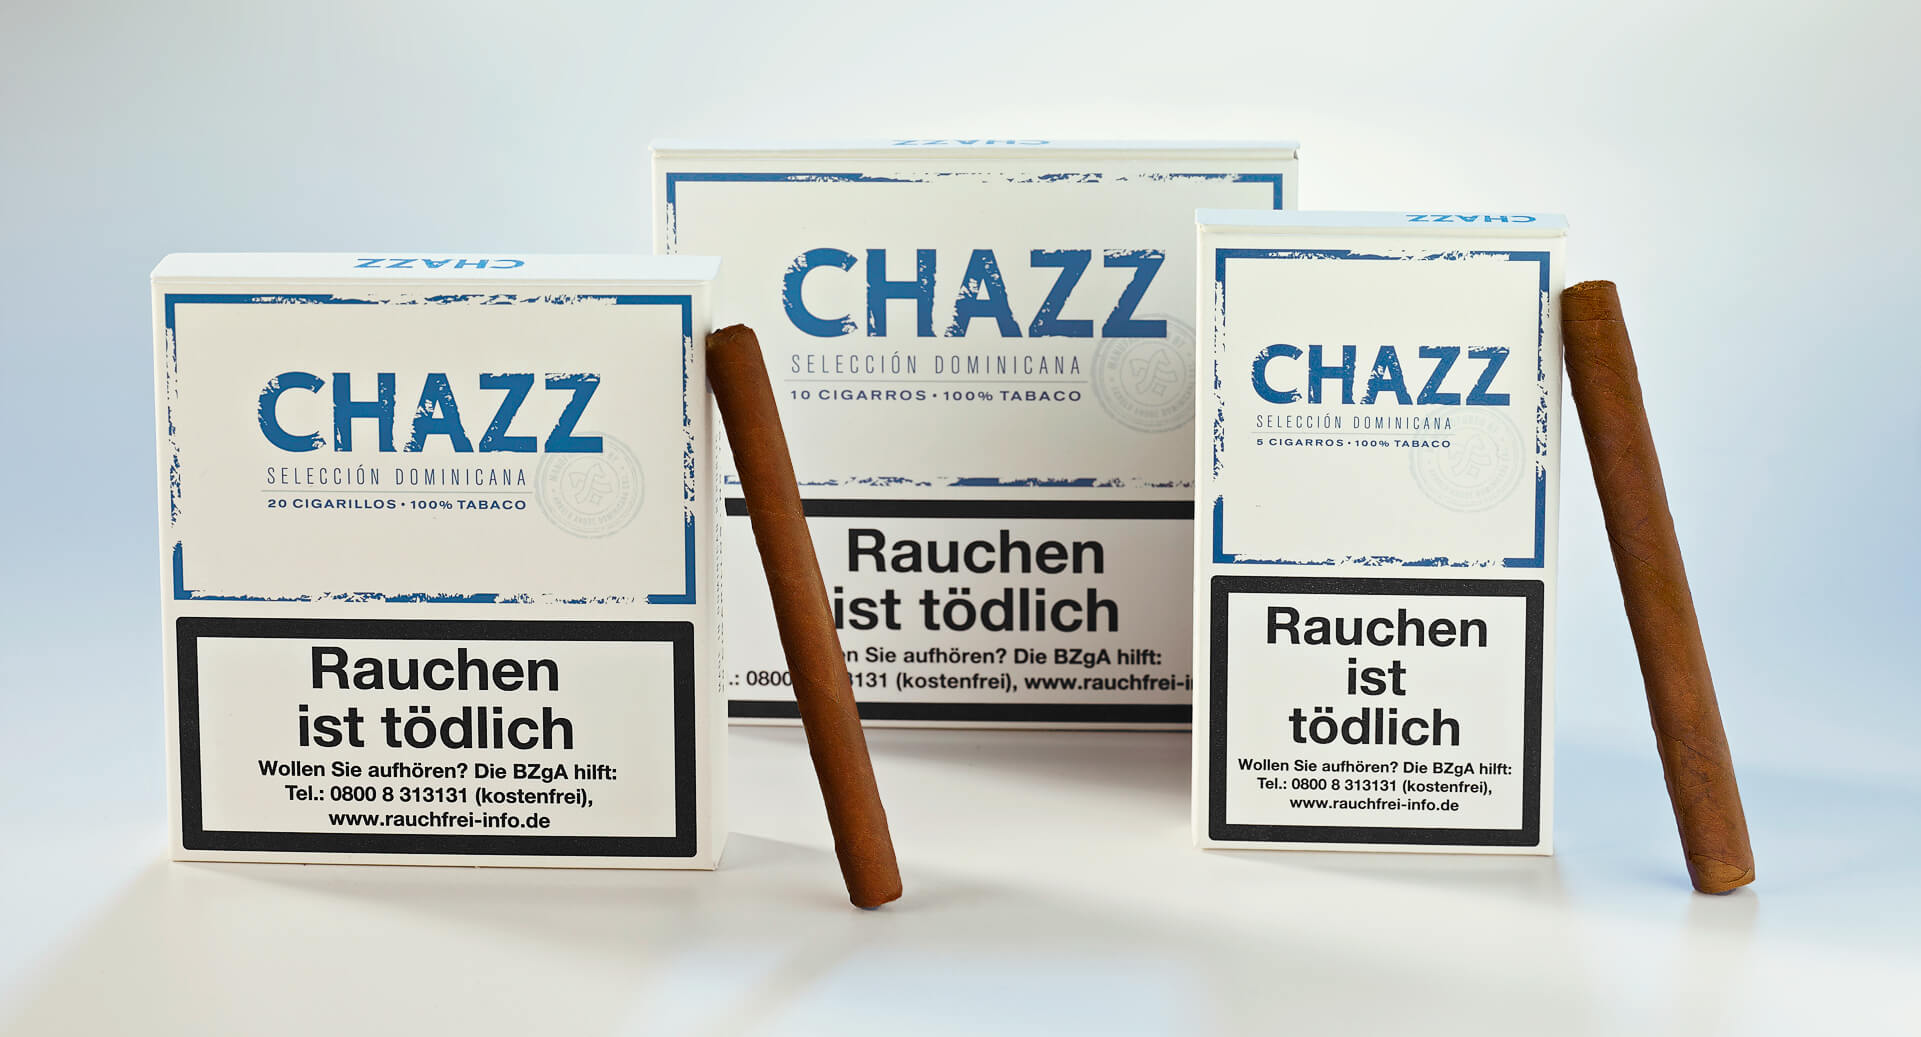 CHAZZ Zigarillos Verpackungen - so sehen die CHAZZ Zigarillos aus